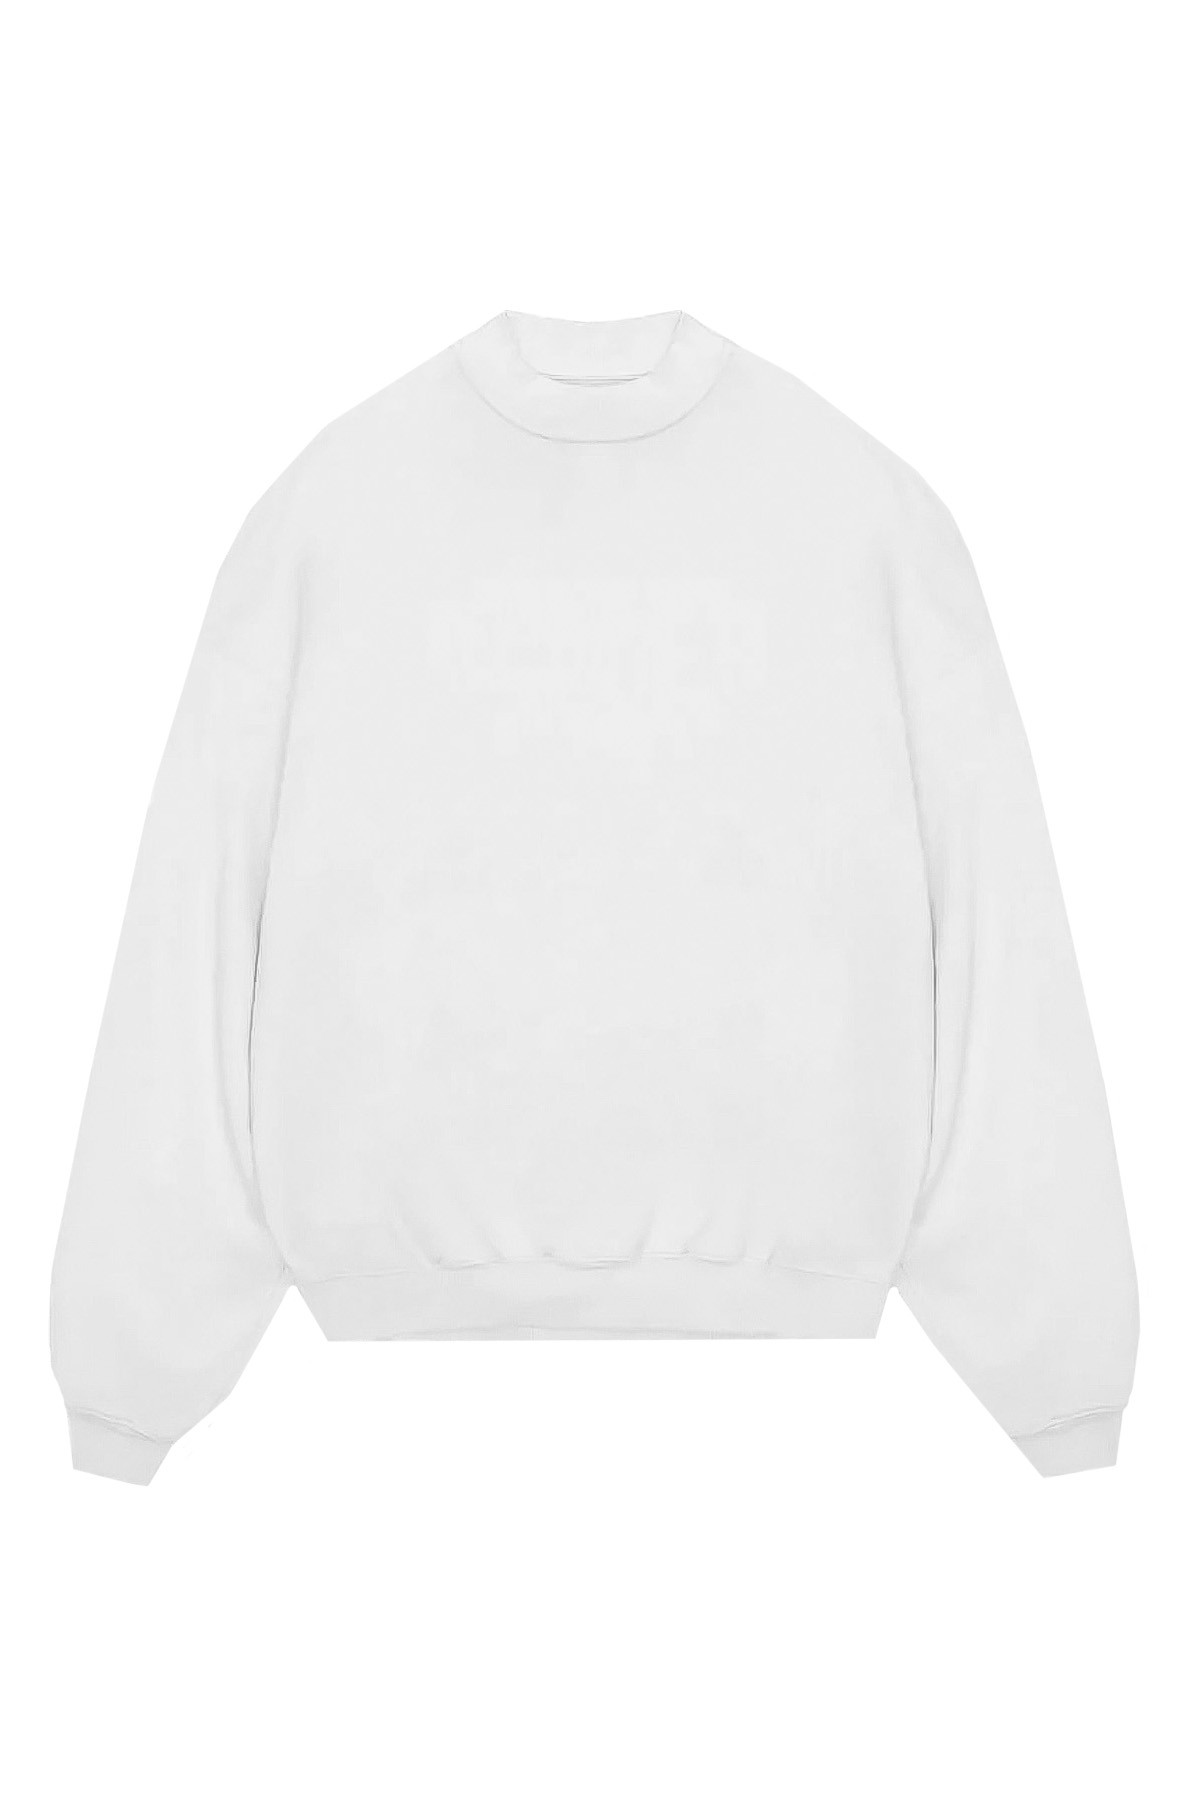 Jeu - Unisex İçi Polarlı Oversize Sweatshirt - BEYAZ